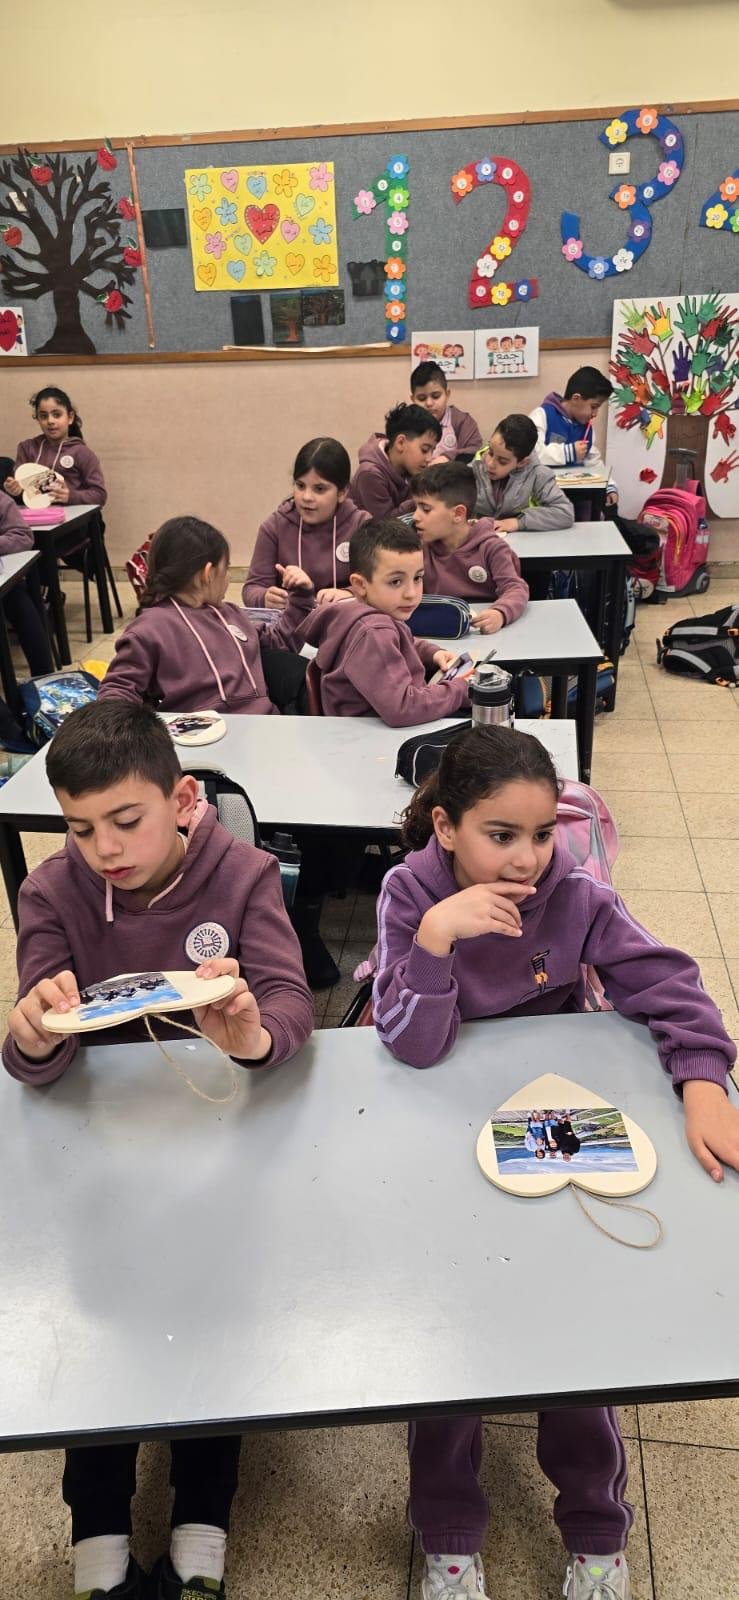 مدرسة الواصفية في الناصرة تتفوق وتعزز العلاقات مع الطلاب والأهل تحت عنوان "التعليم بمتعة"-17